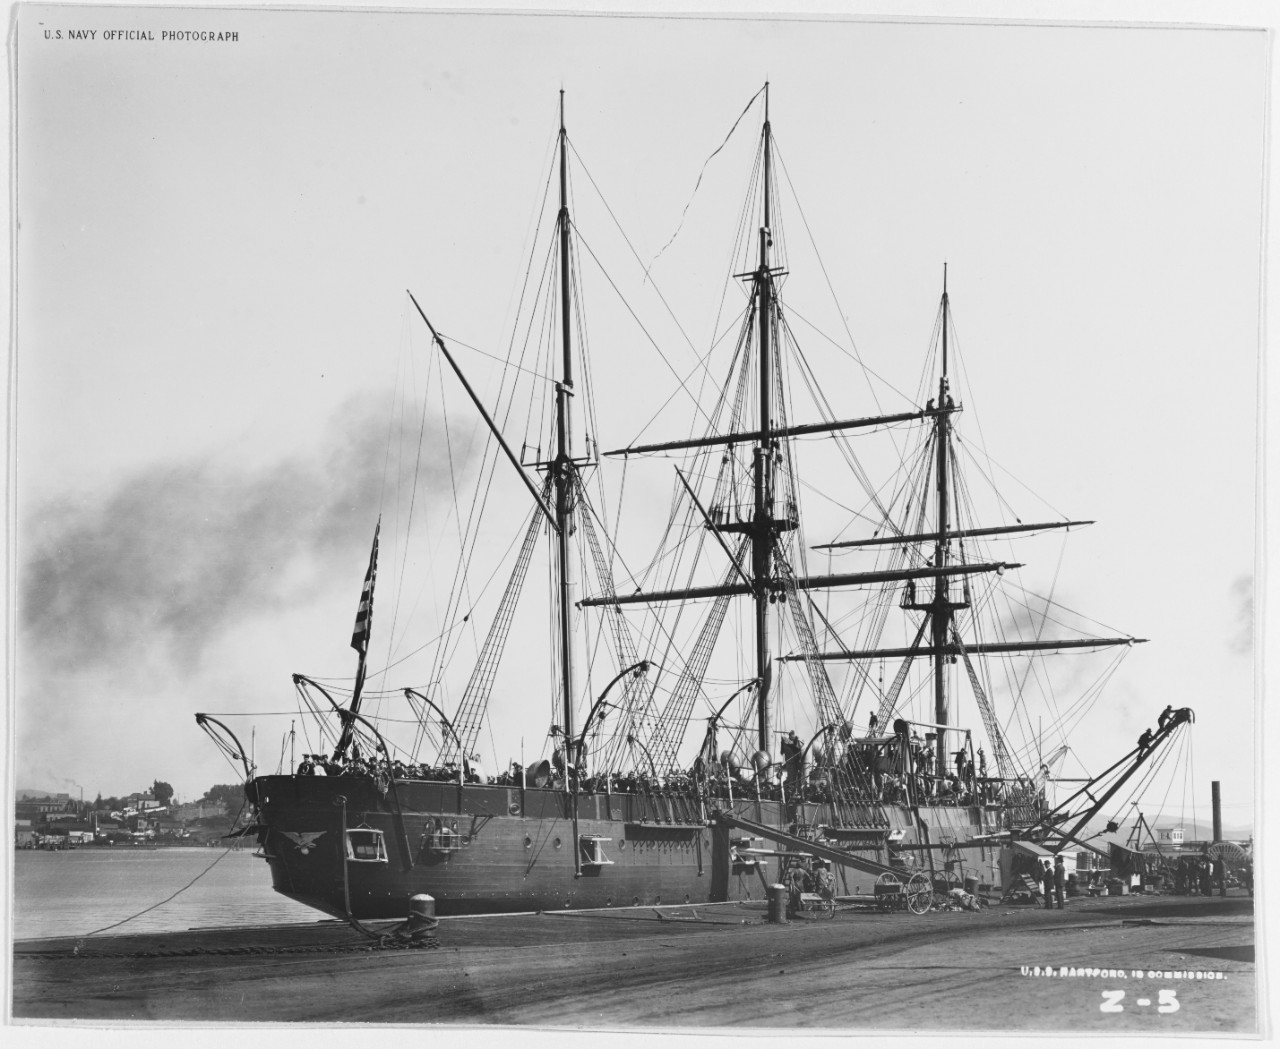 USS HARTFORD (1859-1956)